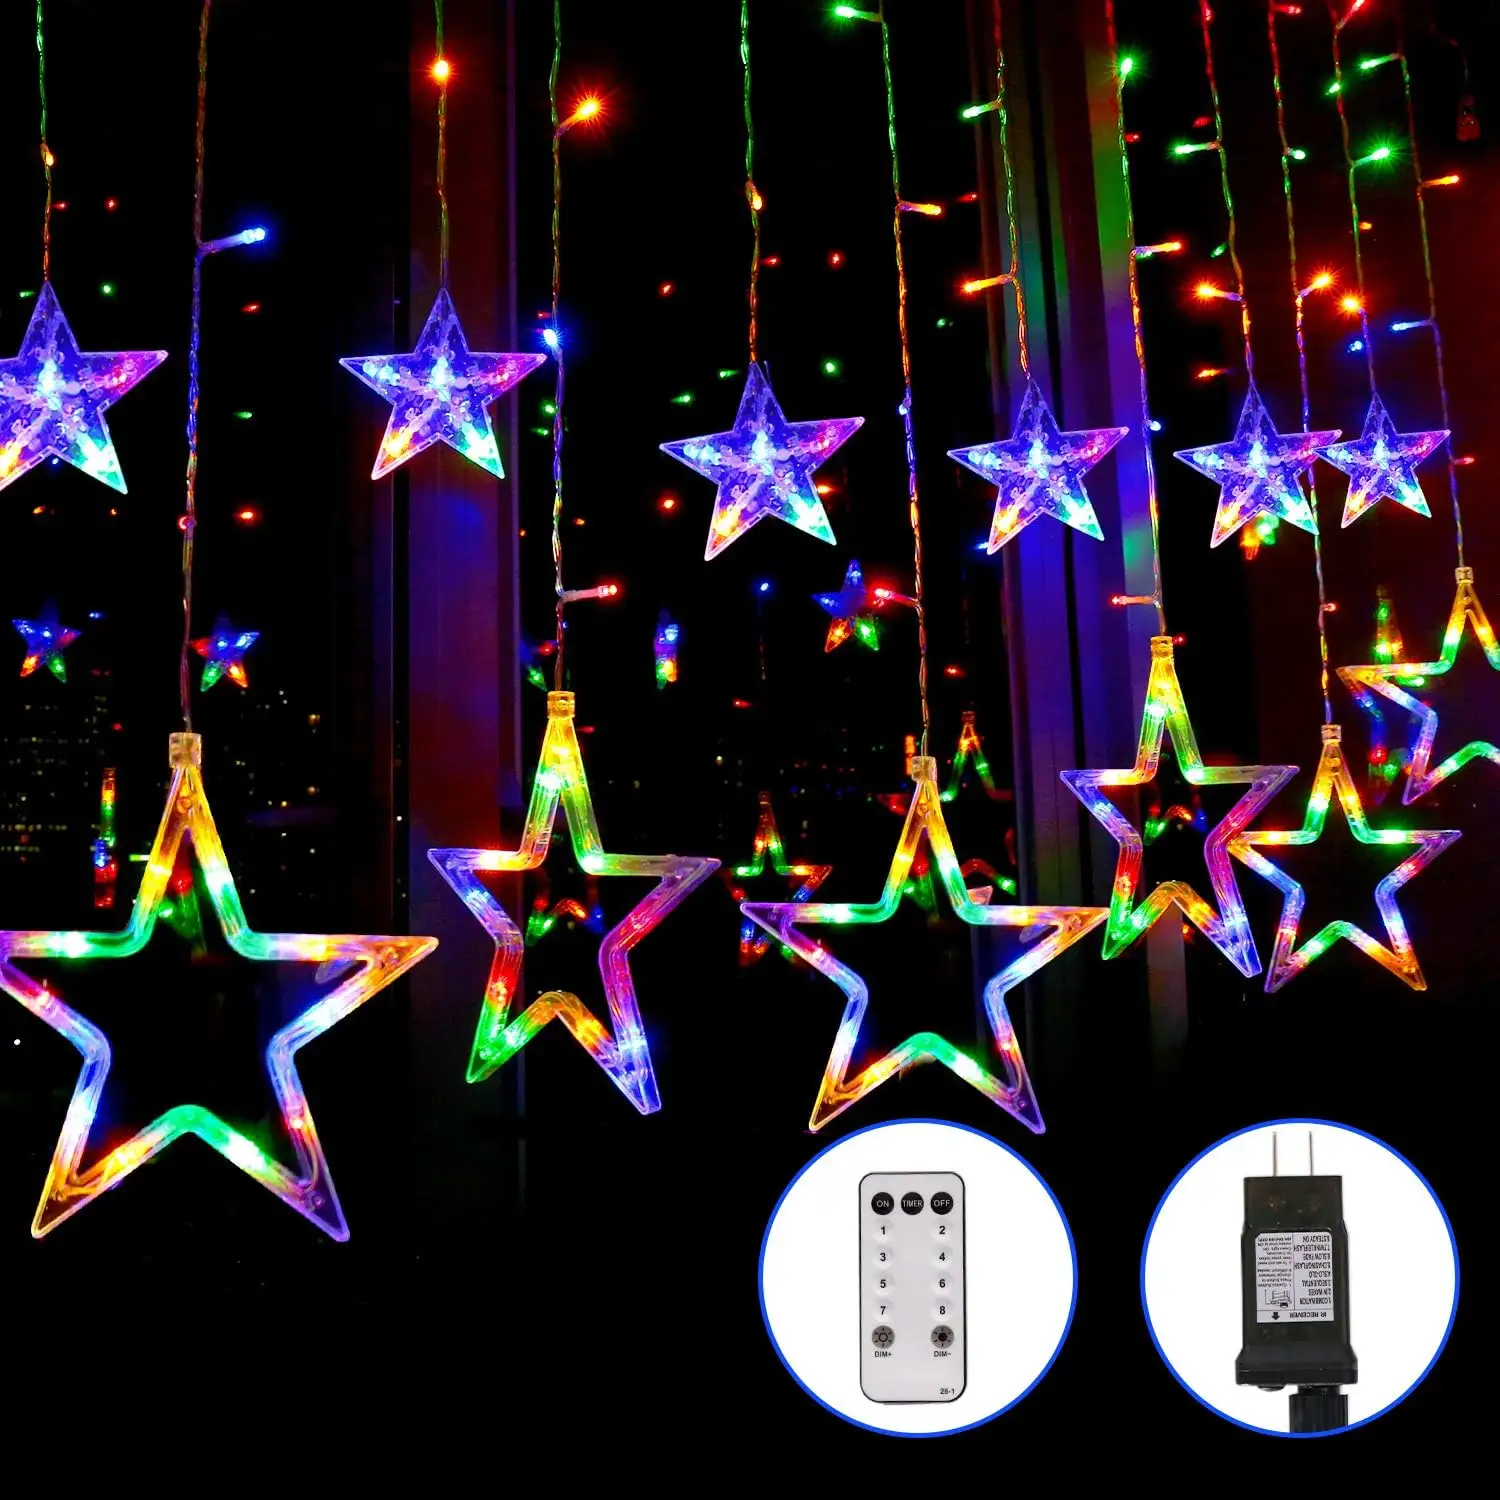 Star Curtain Lights Mehrfarbige neue Weihnachts beleuchtung für Indoor Outdoor Room Geburtstag Hochzeits feier Dekor